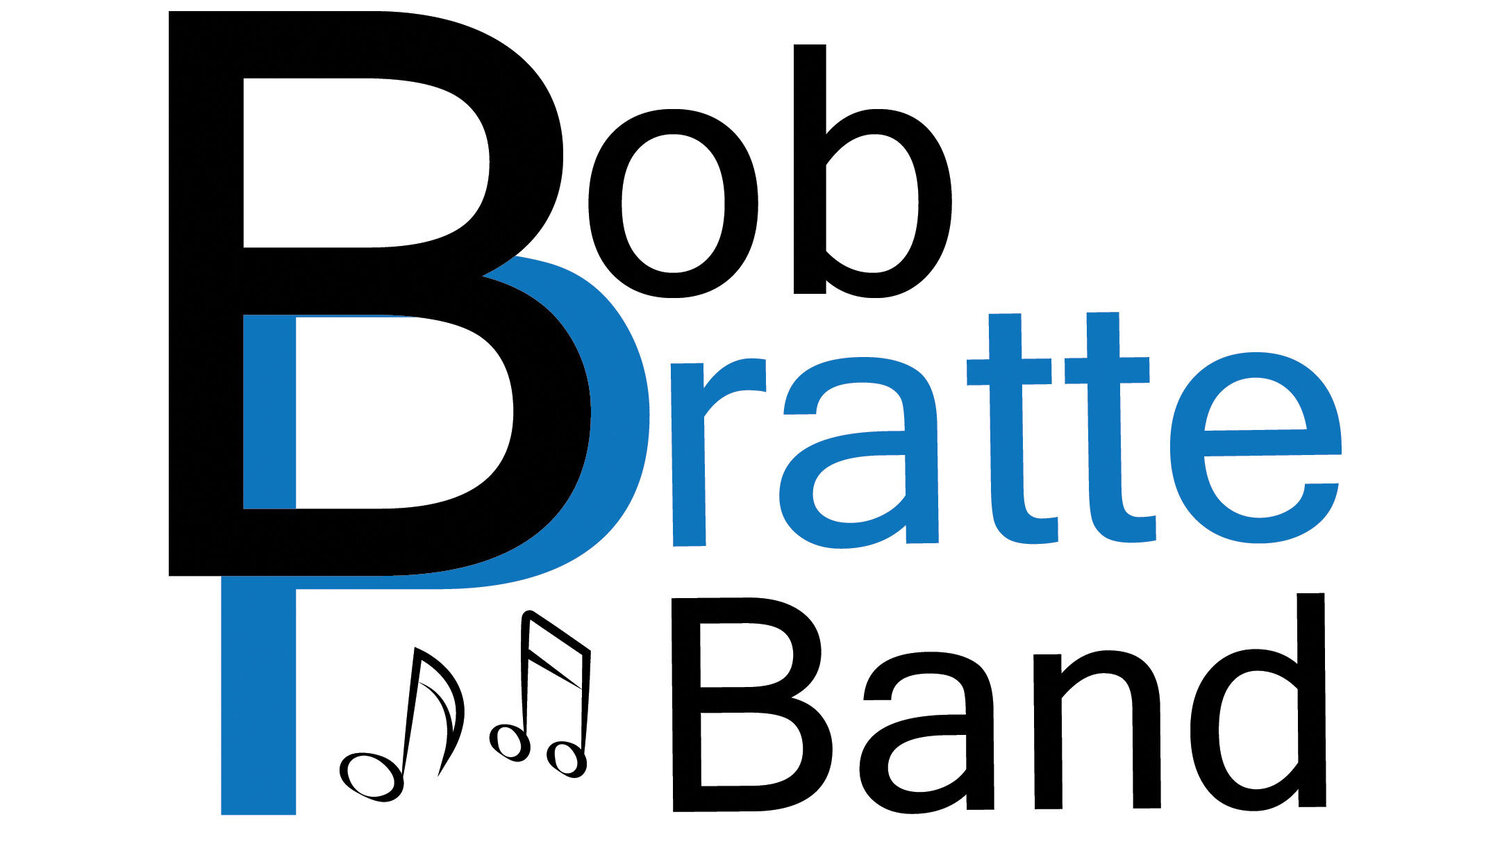 The Bob Pratte band